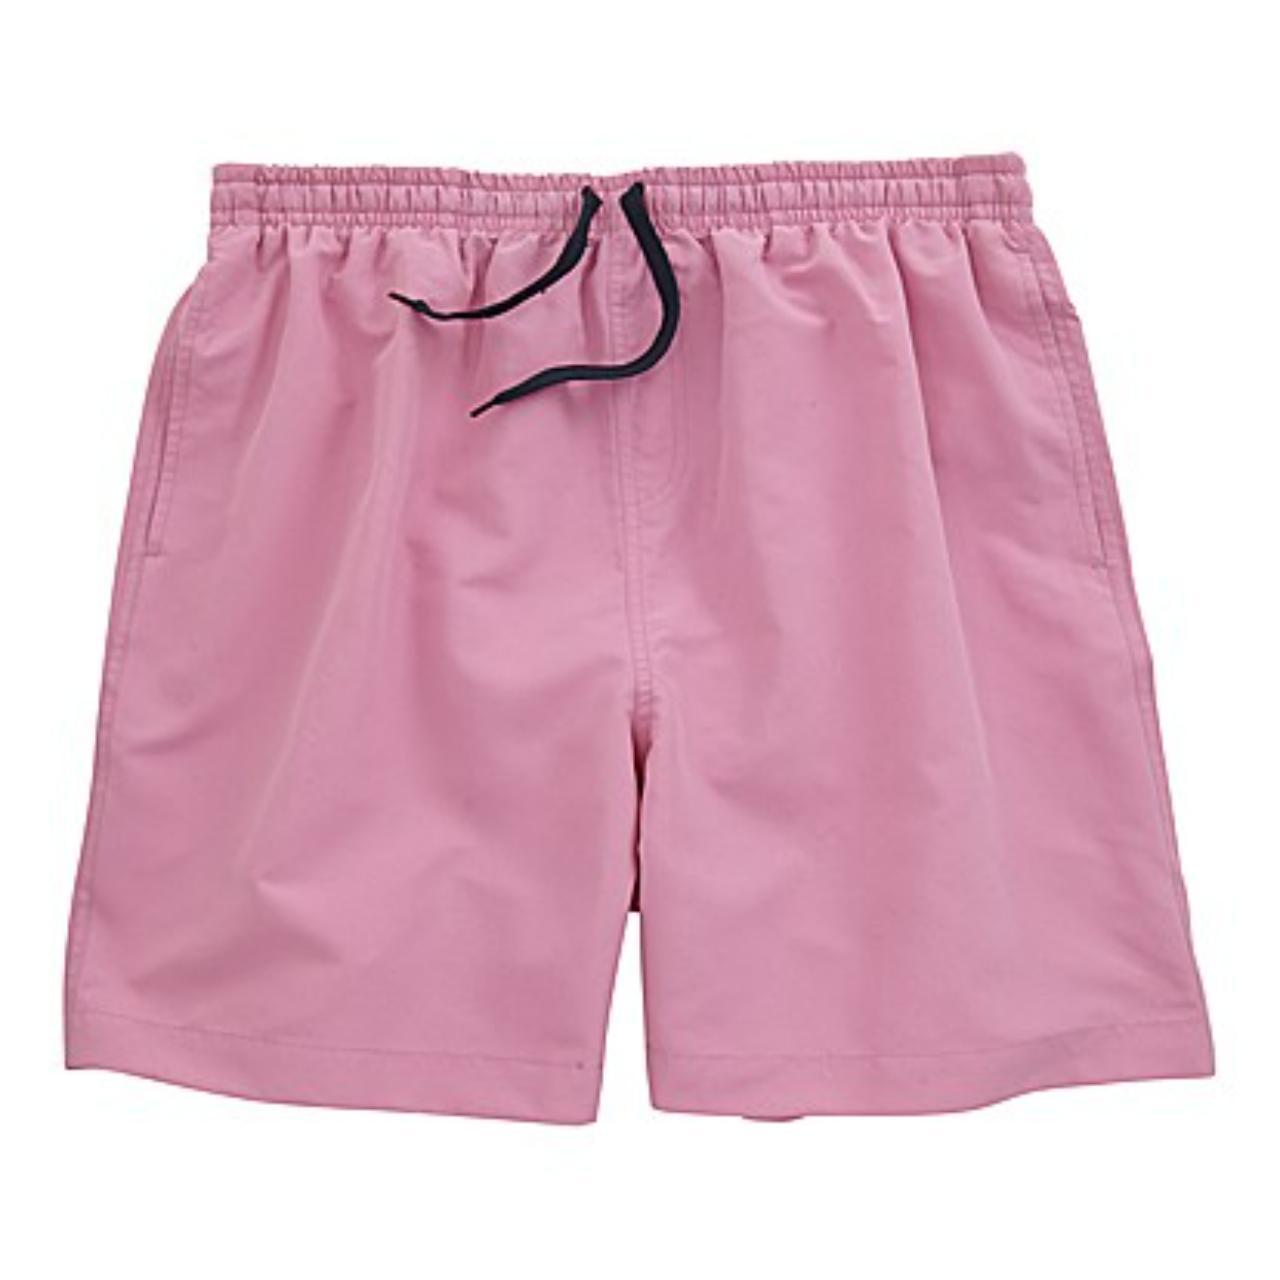 New W&B Pink Swim Shorts Side pockets Waist Size... - Depop